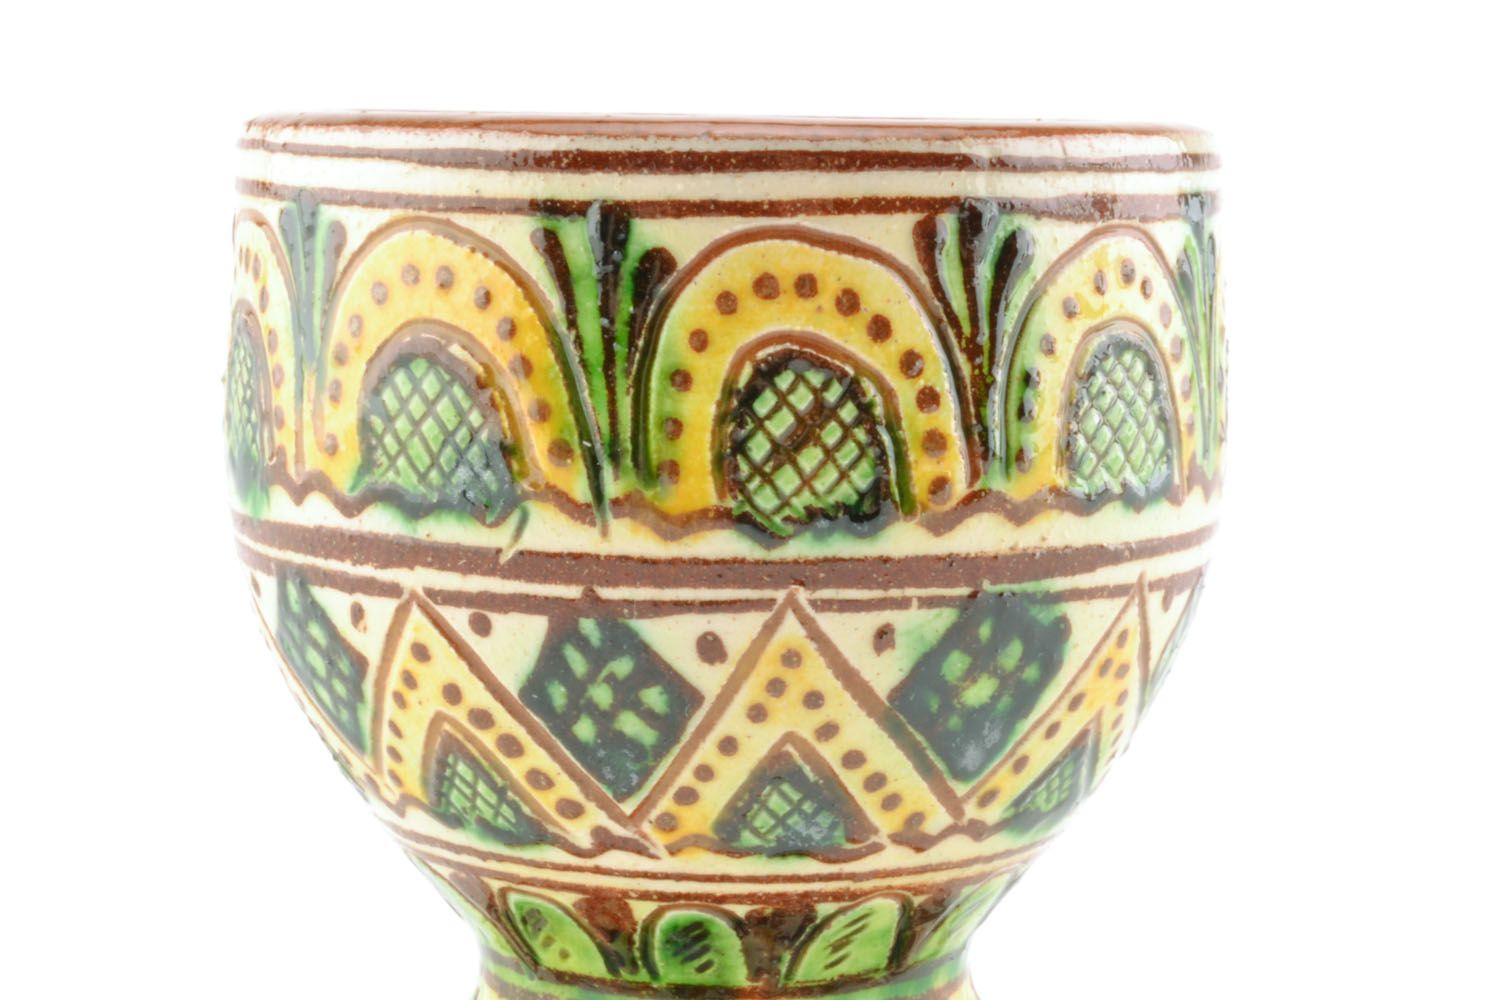 Small glass made using Ukrainian folk ceramic technique photo 5